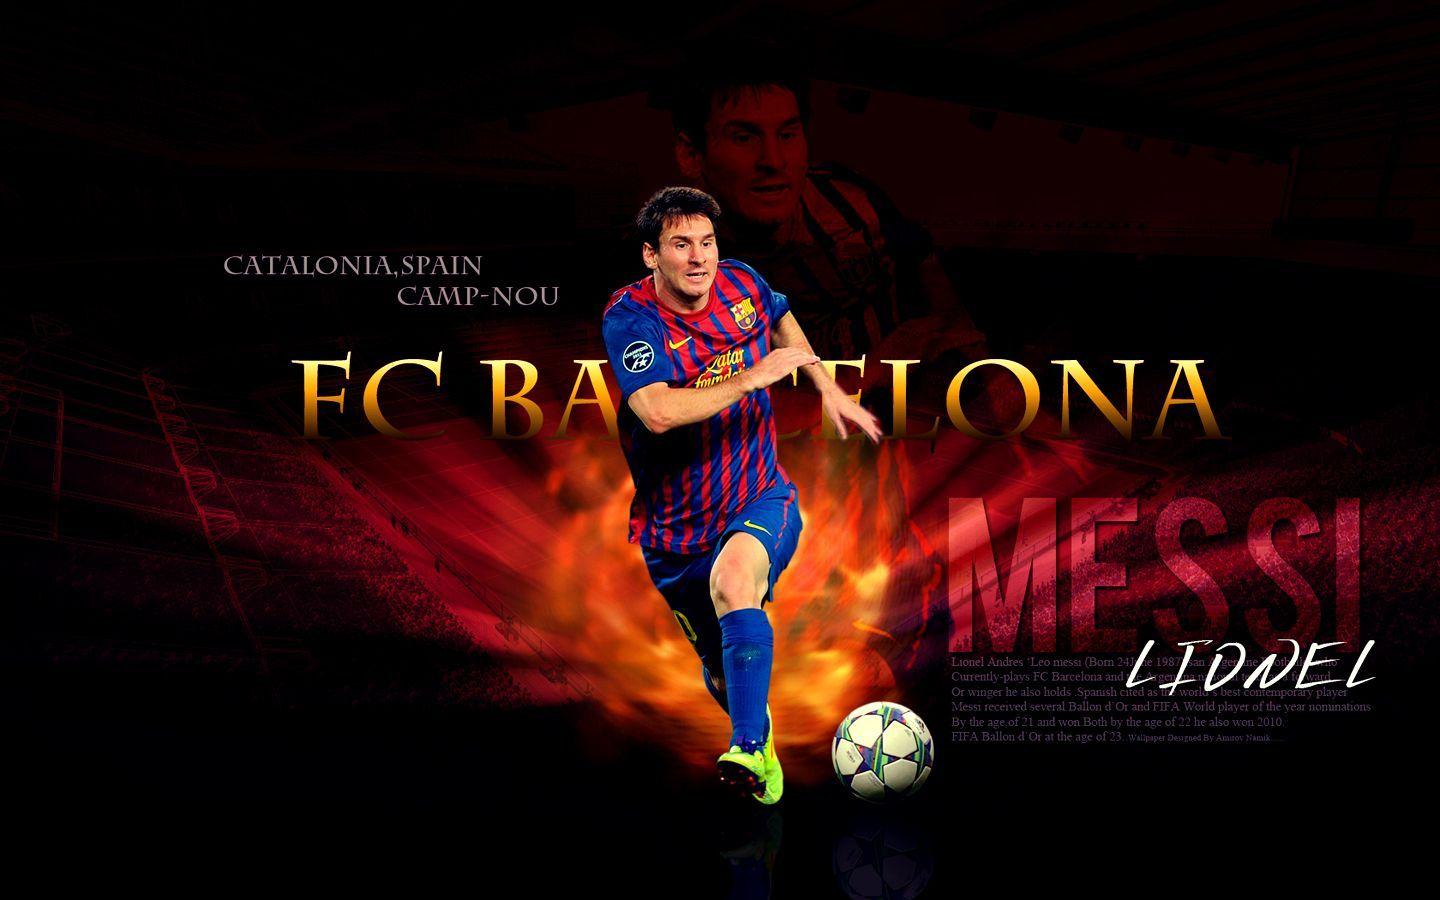 Wallpaper Of Messi